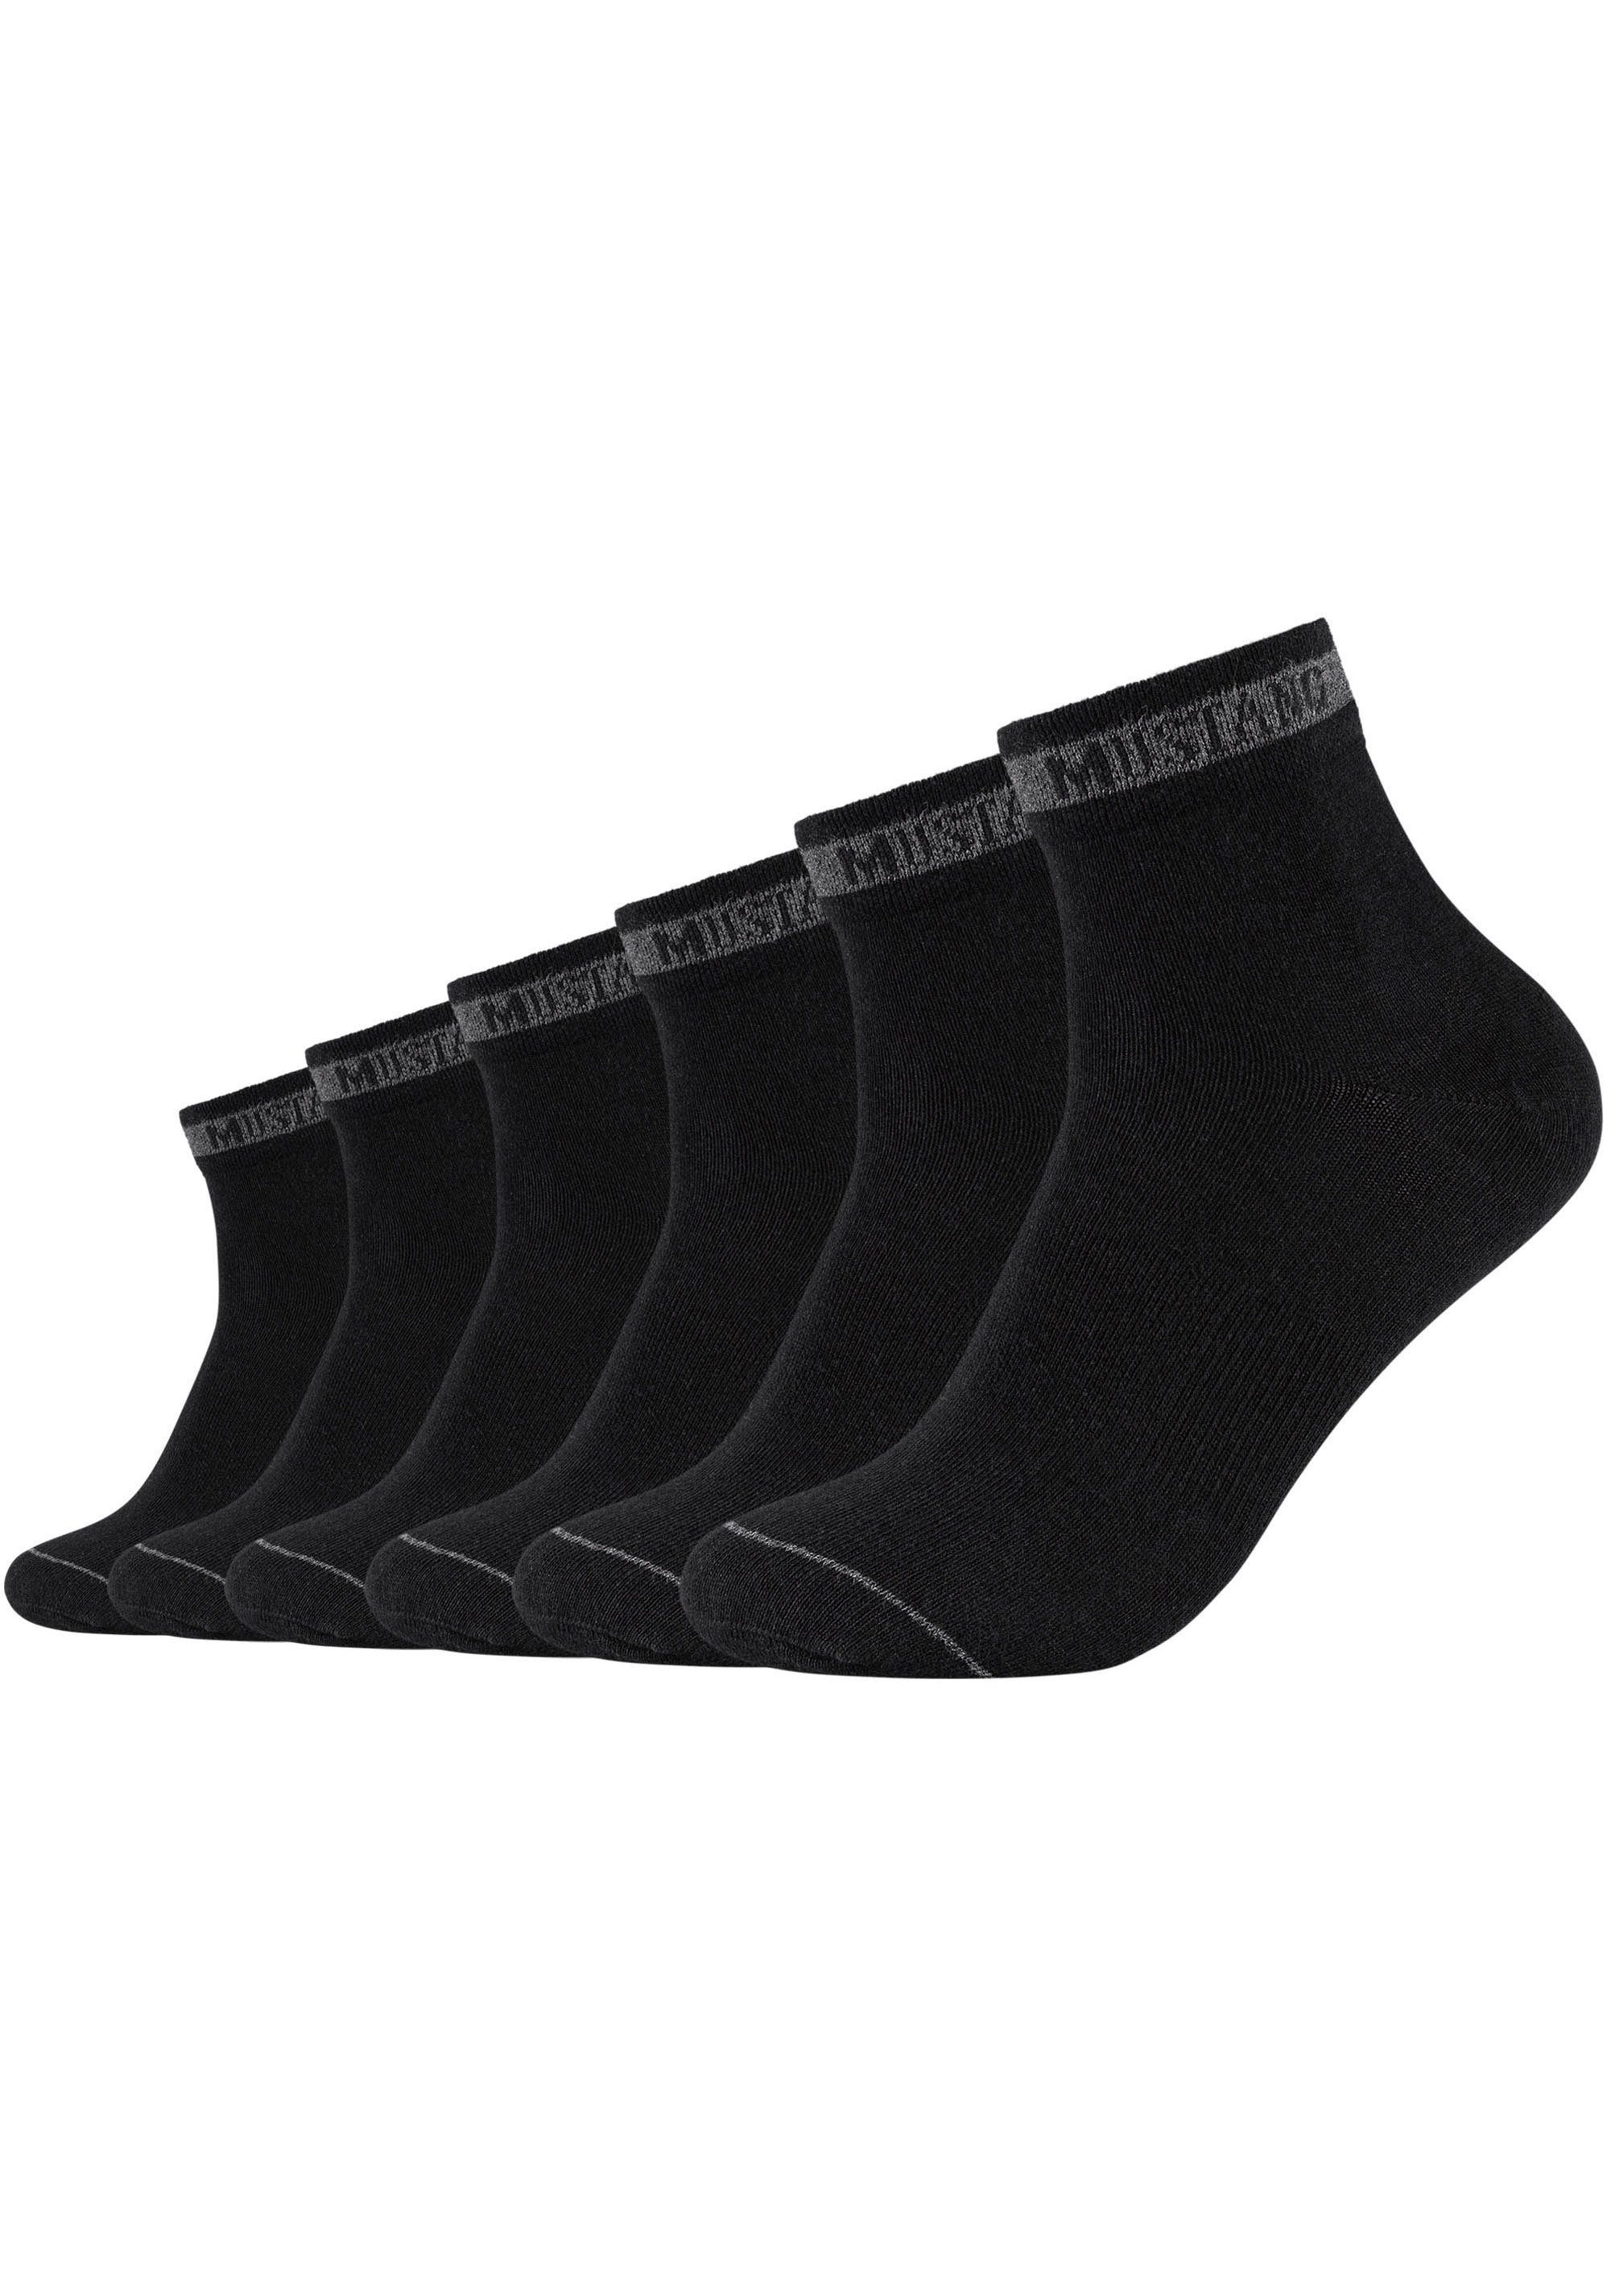 angenehmes schwarz für Fußklima Kurzsocken 6-Paar) (Packung, ein sorgt MUSTANG Baumwollanteil jederzeit Hoher